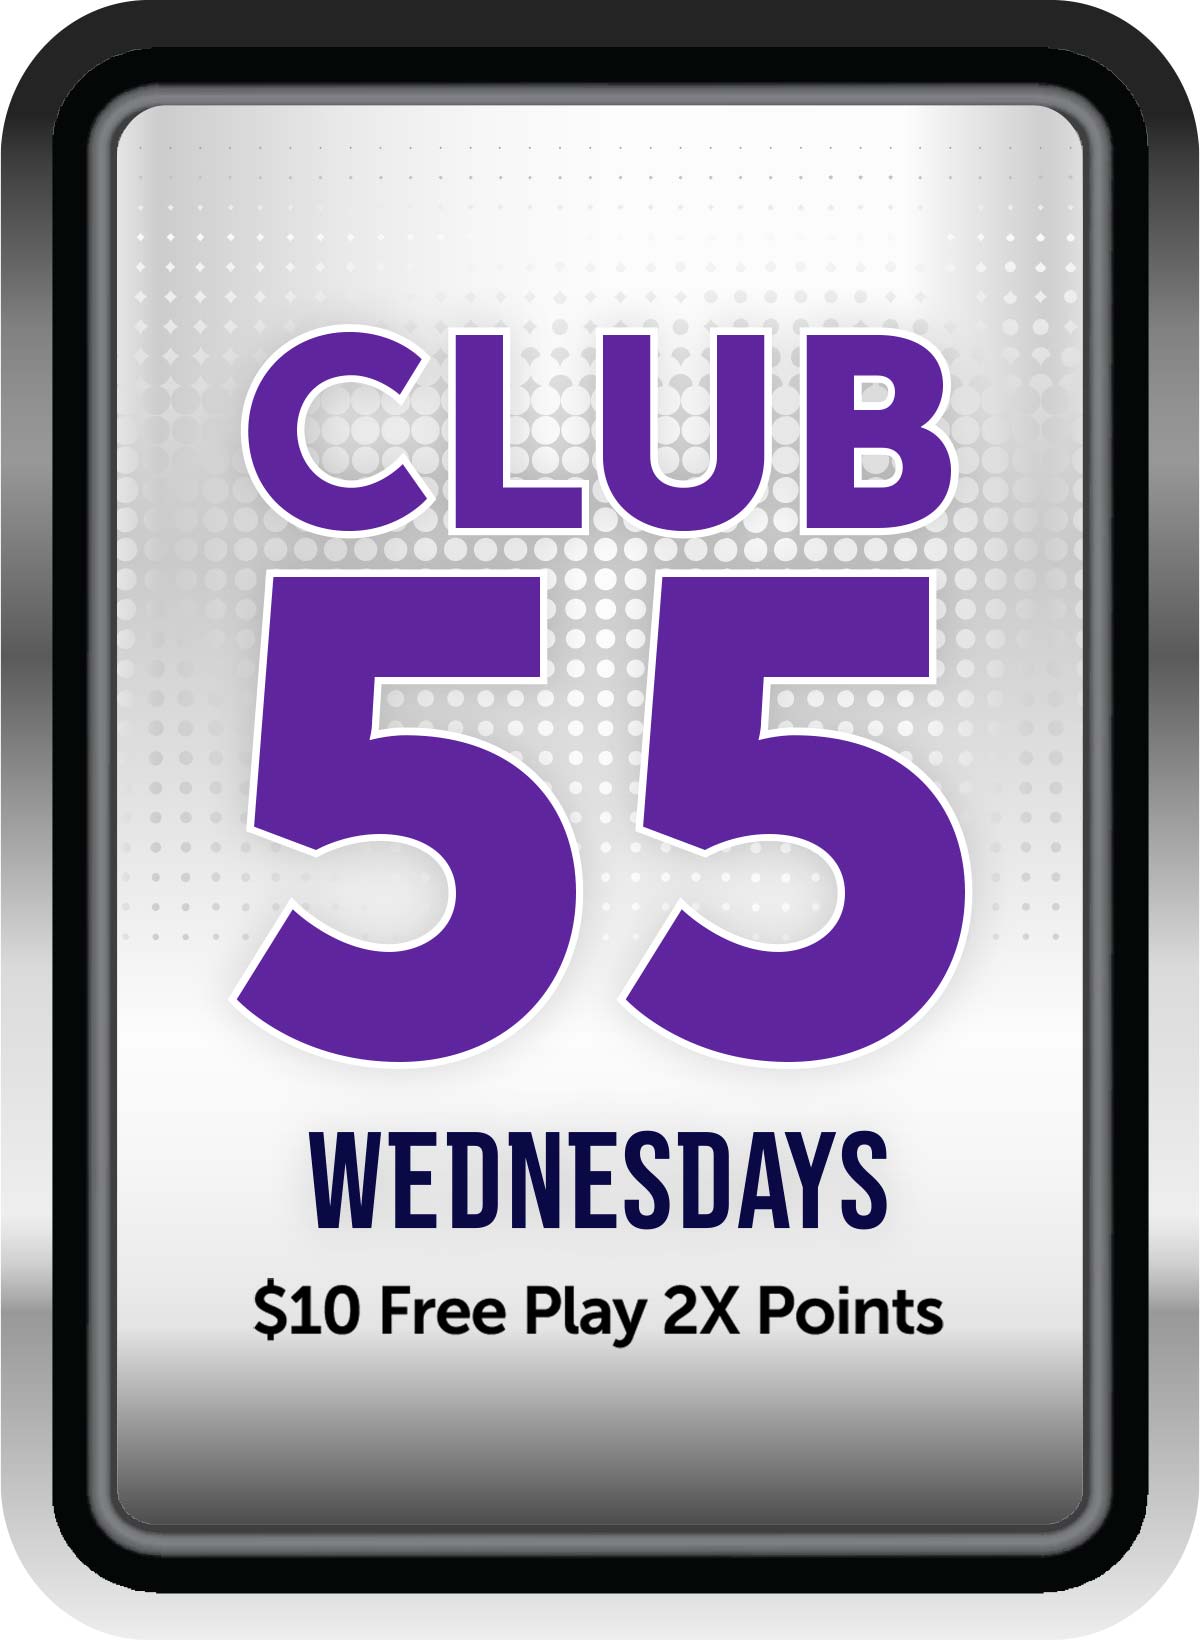 Club 55 Wednesdays: $10 Free Play, 2X Points